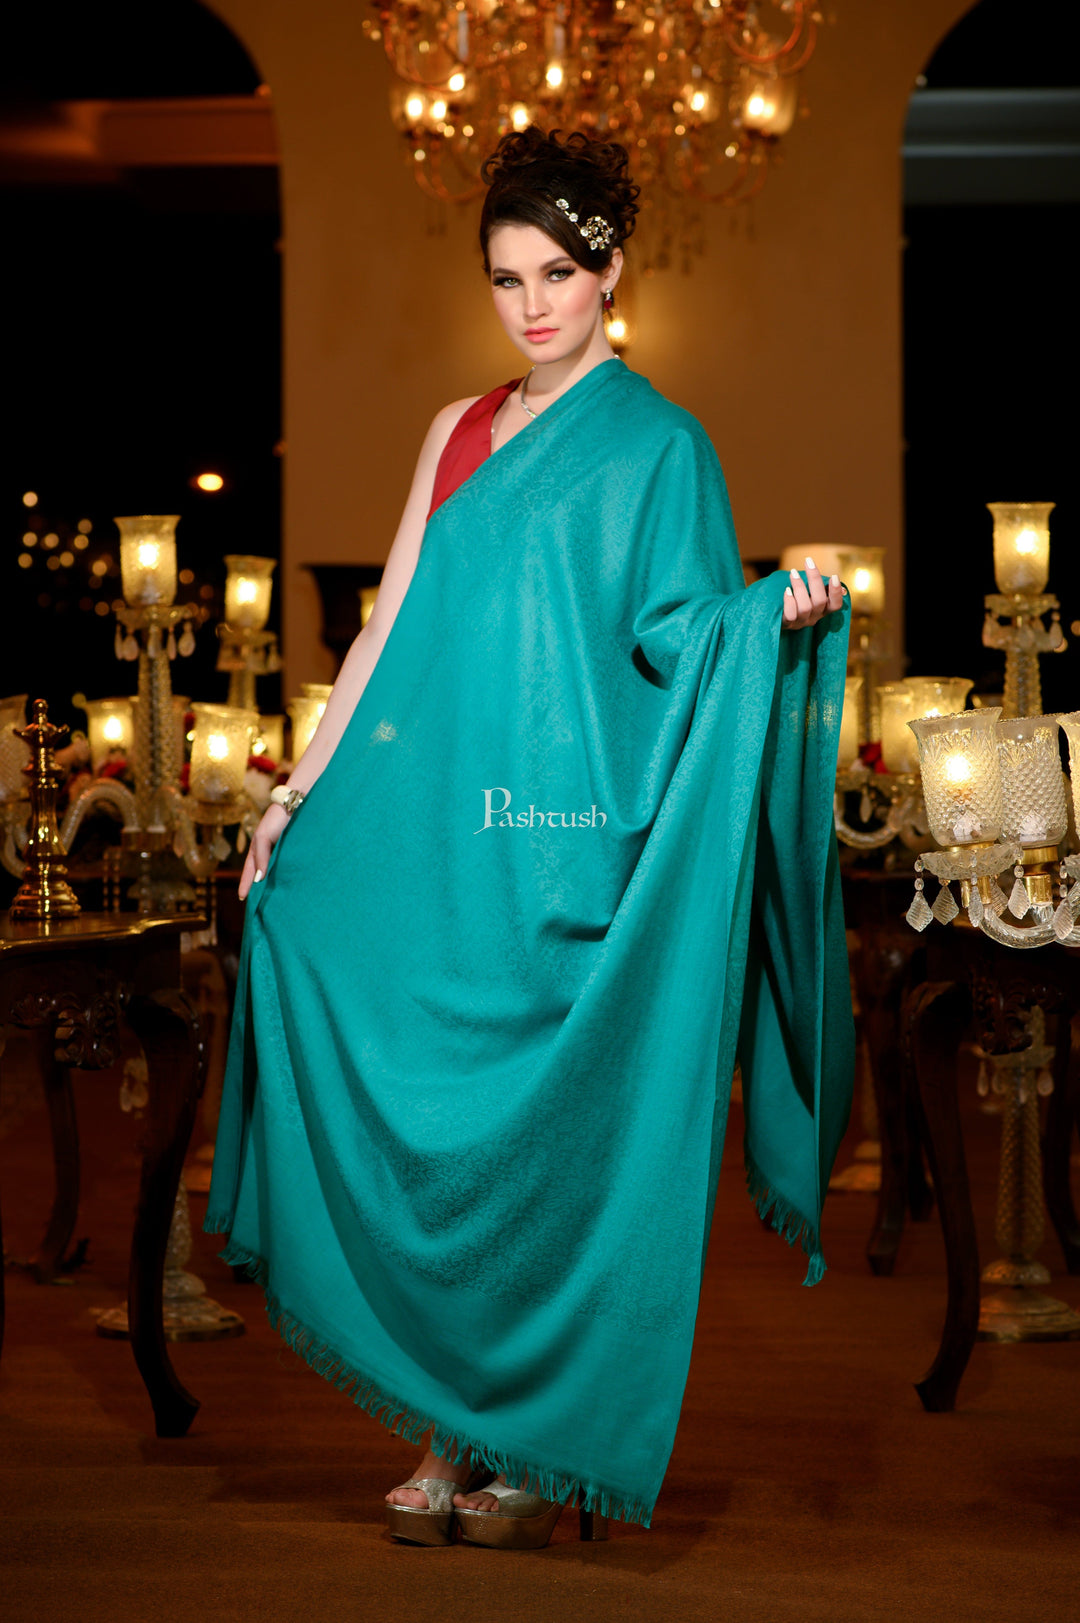 https://pashtush.in/cdn/shop/files/pashtush-pashmina-pashtush-womens-extra-fine-wool-shawl-solid-arabic-sea-green-42013015441723.jpg?v=1686901918&width=1080